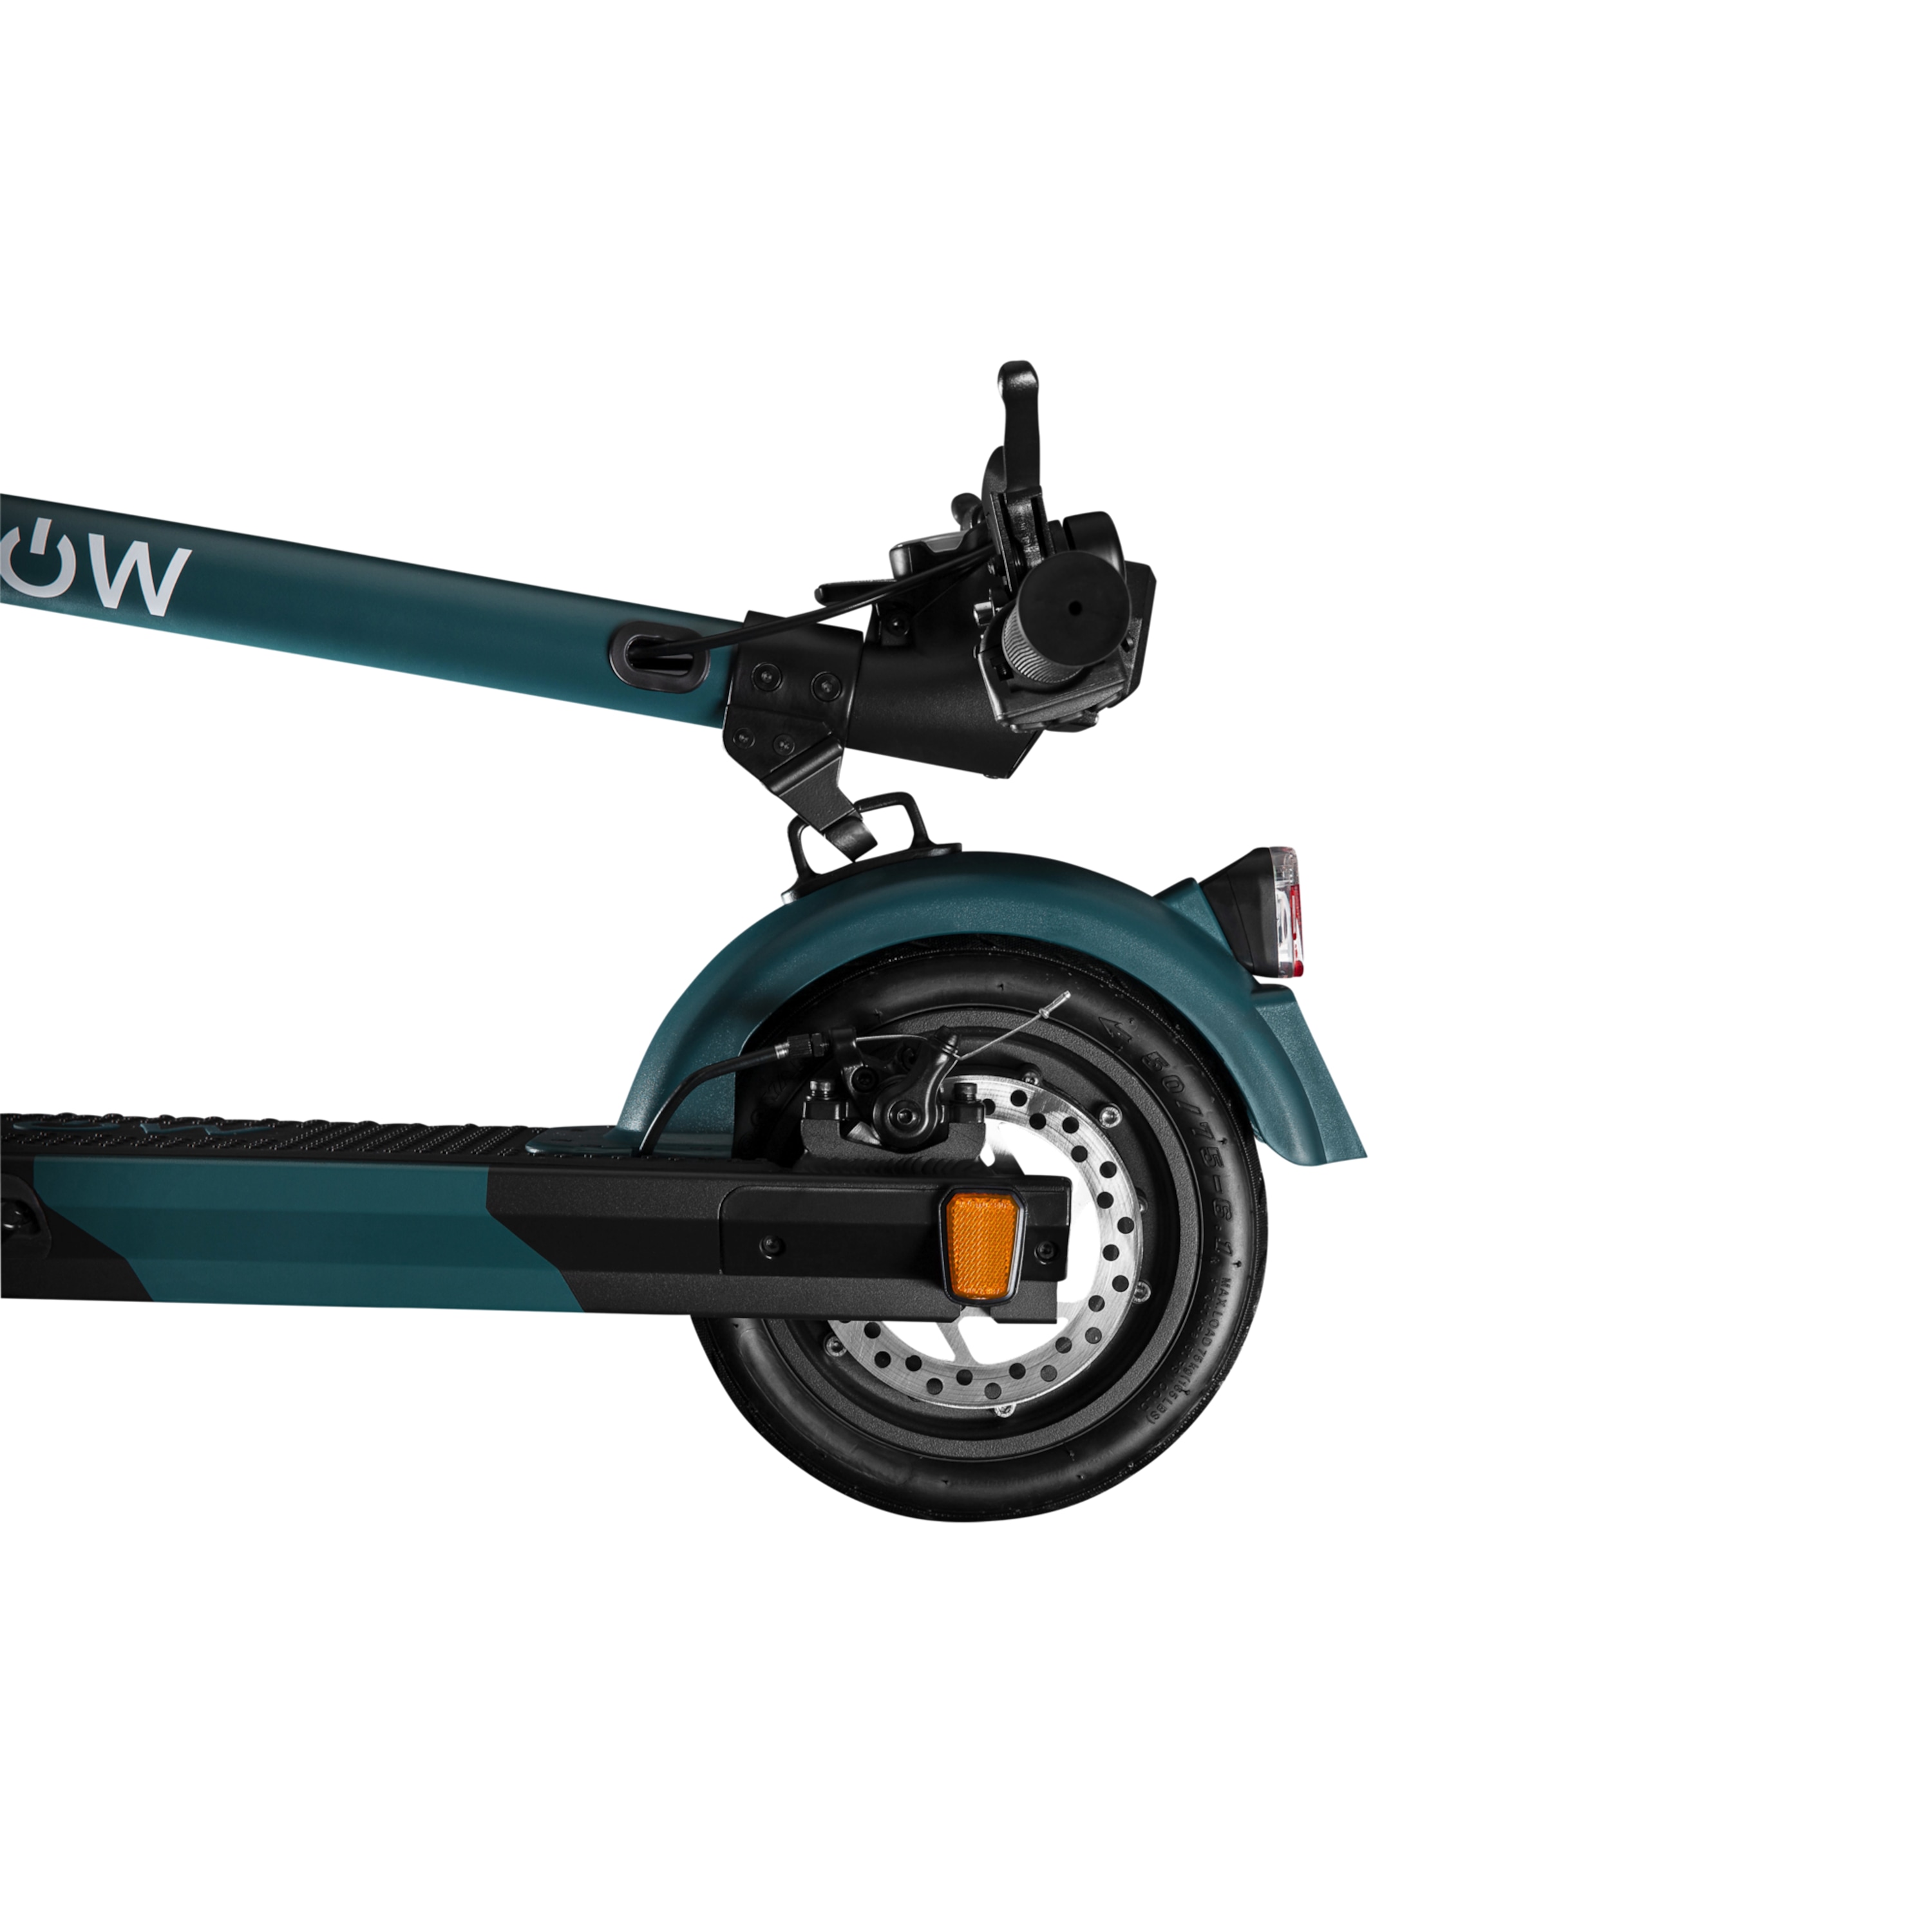 SOFLOW S04 Basic E-Scooter, mit deutscher Straßenzulassung, sehr robuste und stabile Bauweise, Sicherheitsplus durch Scheibenbremse vorne und hinten